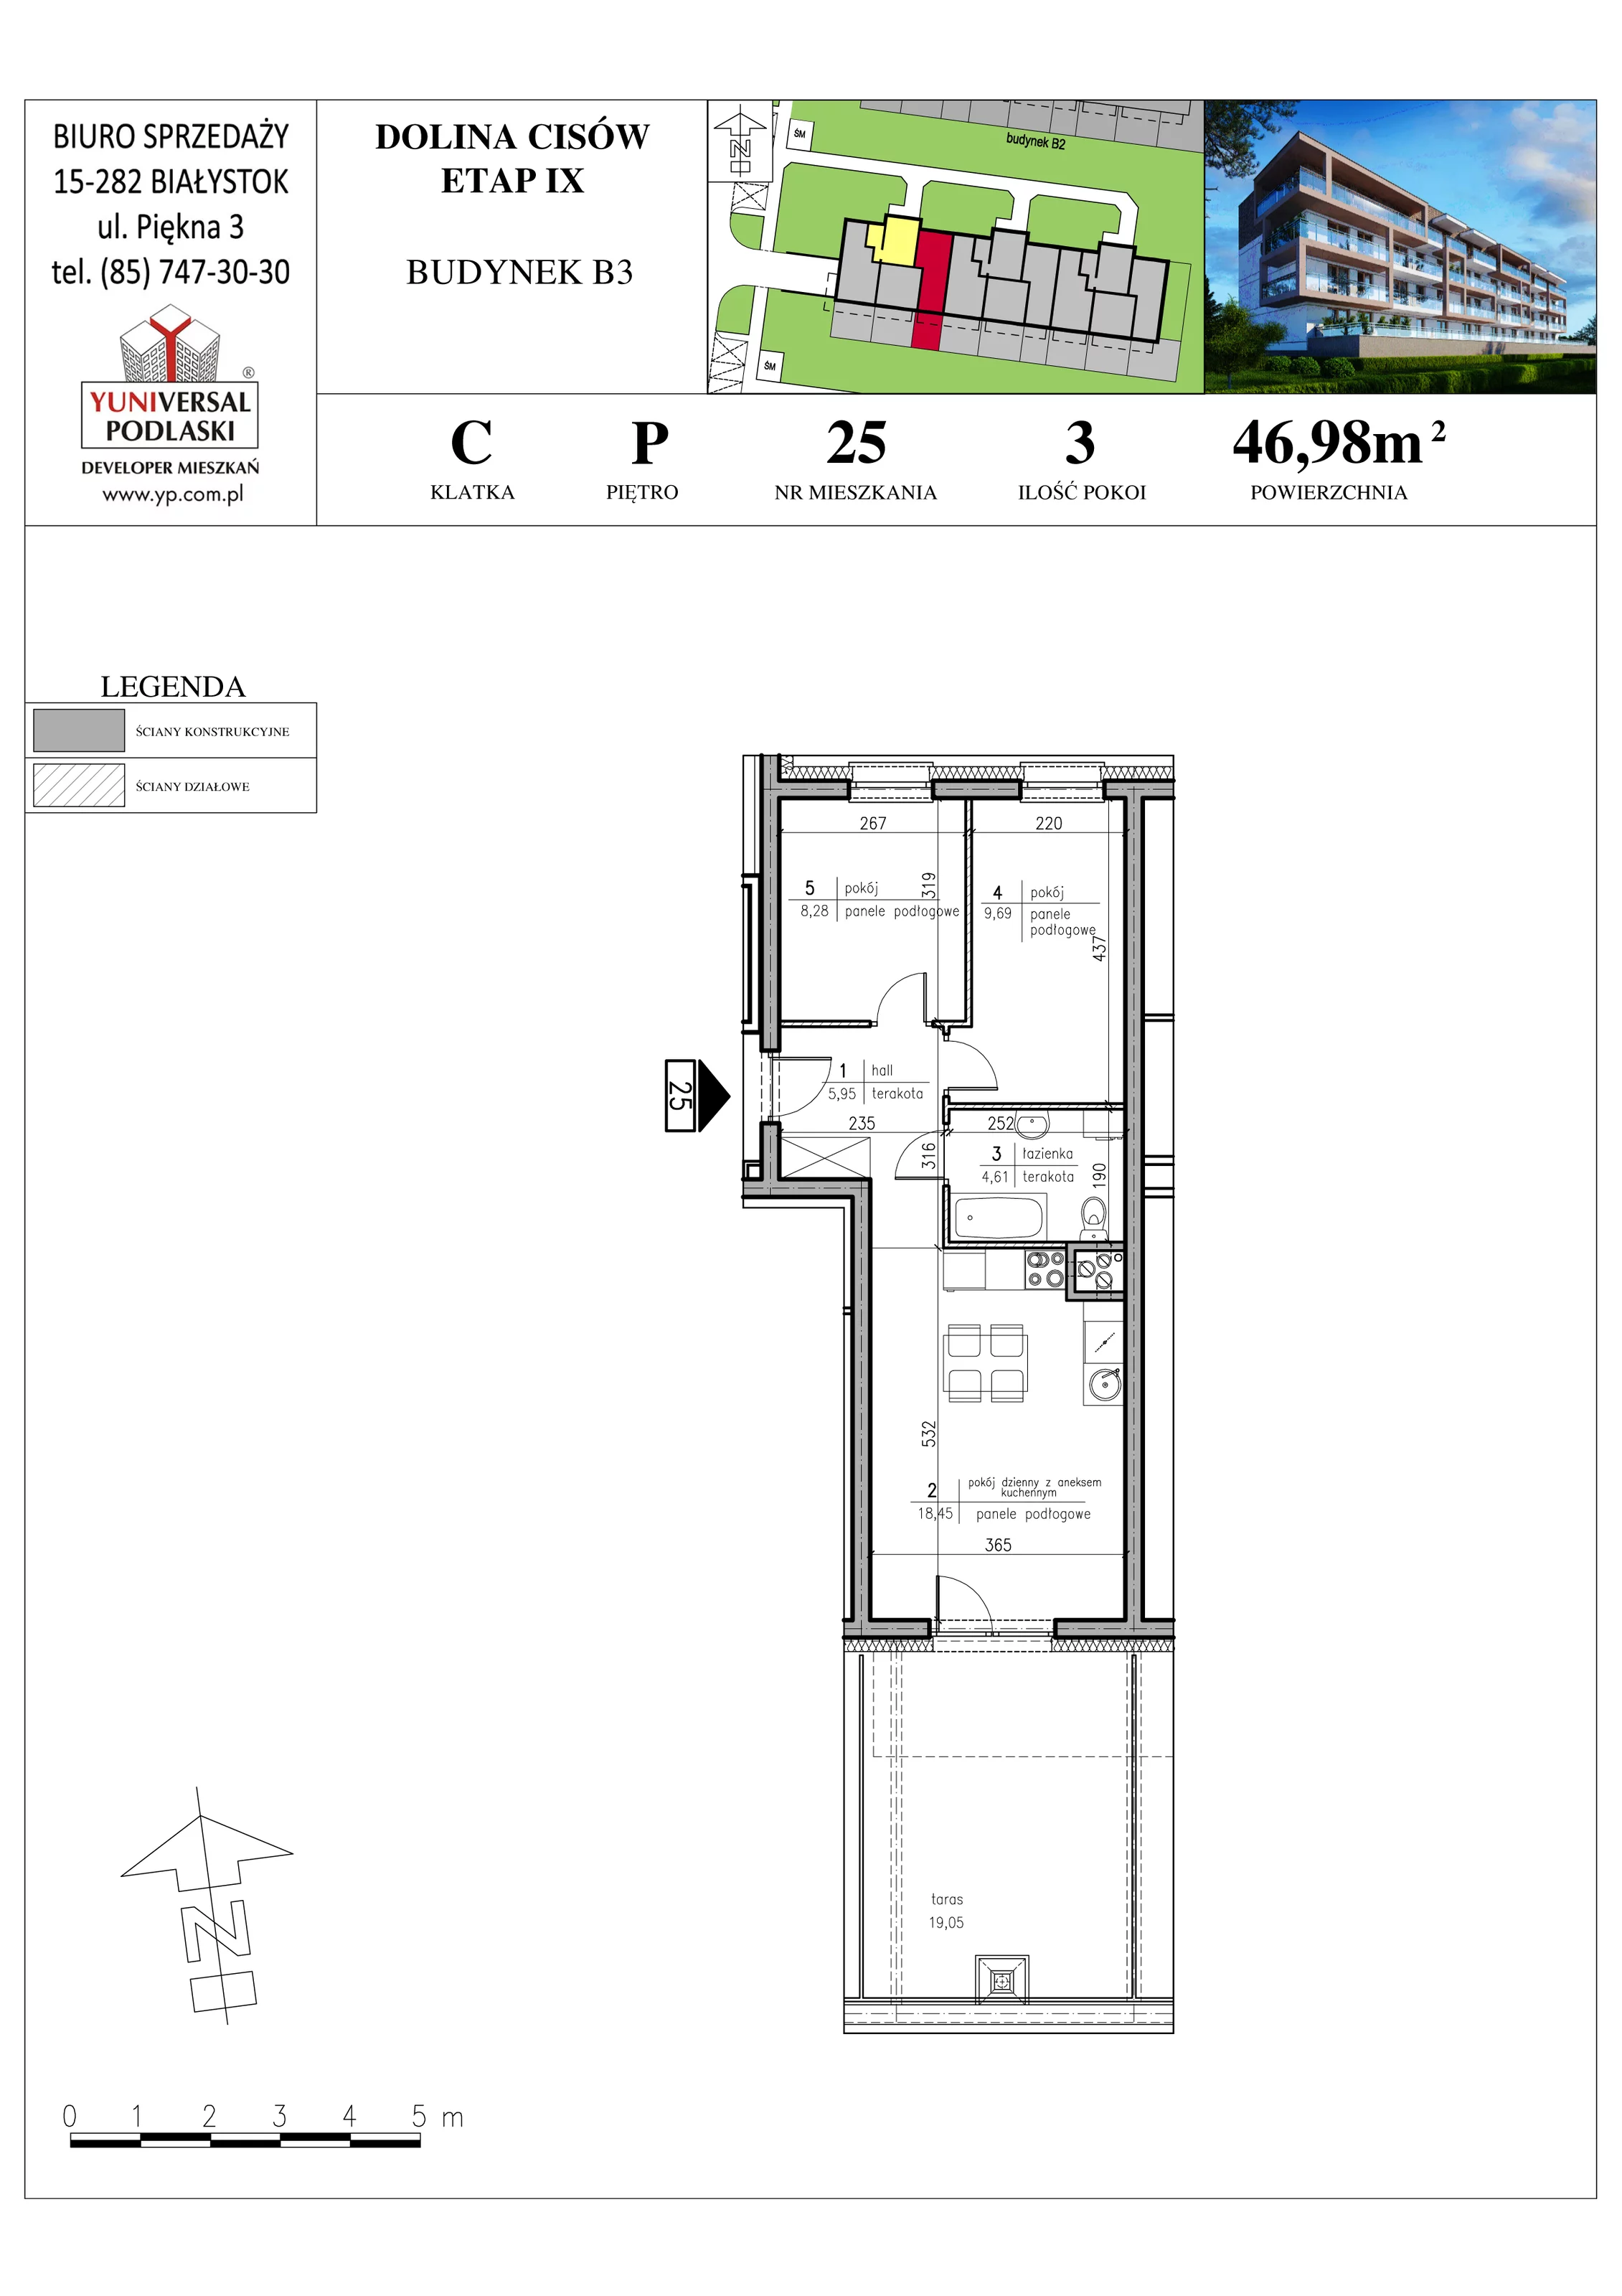 Mieszkanie 46,98 m², parter, oferta nr B3-25, Osiedle Dolina Cisów - Etap IX, Wasilków, ul. Nadawki